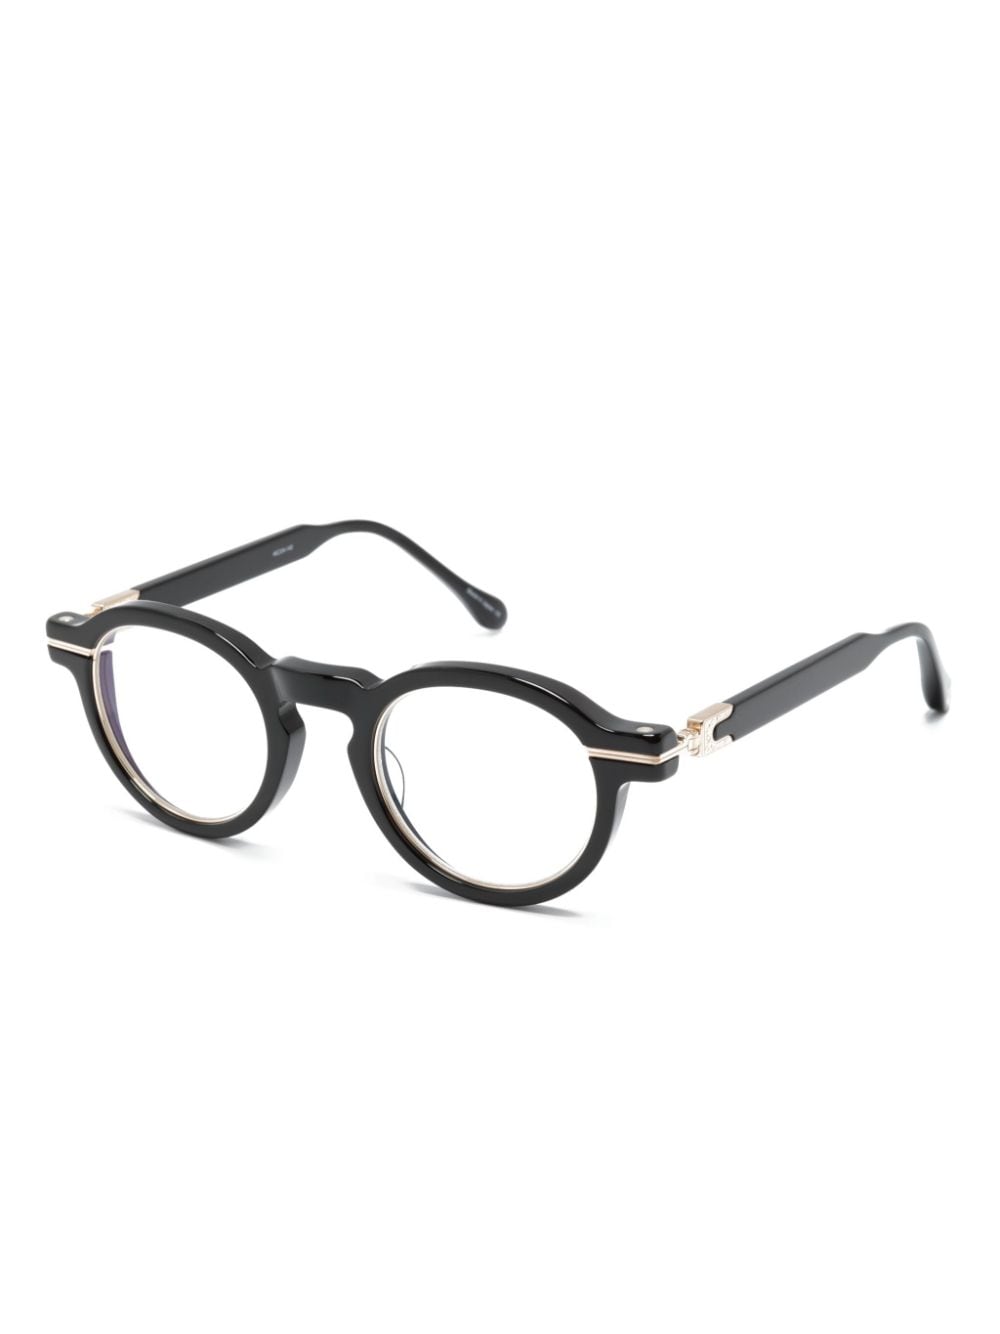 Matsuda M2050 pantos-frame glasses - Zwart